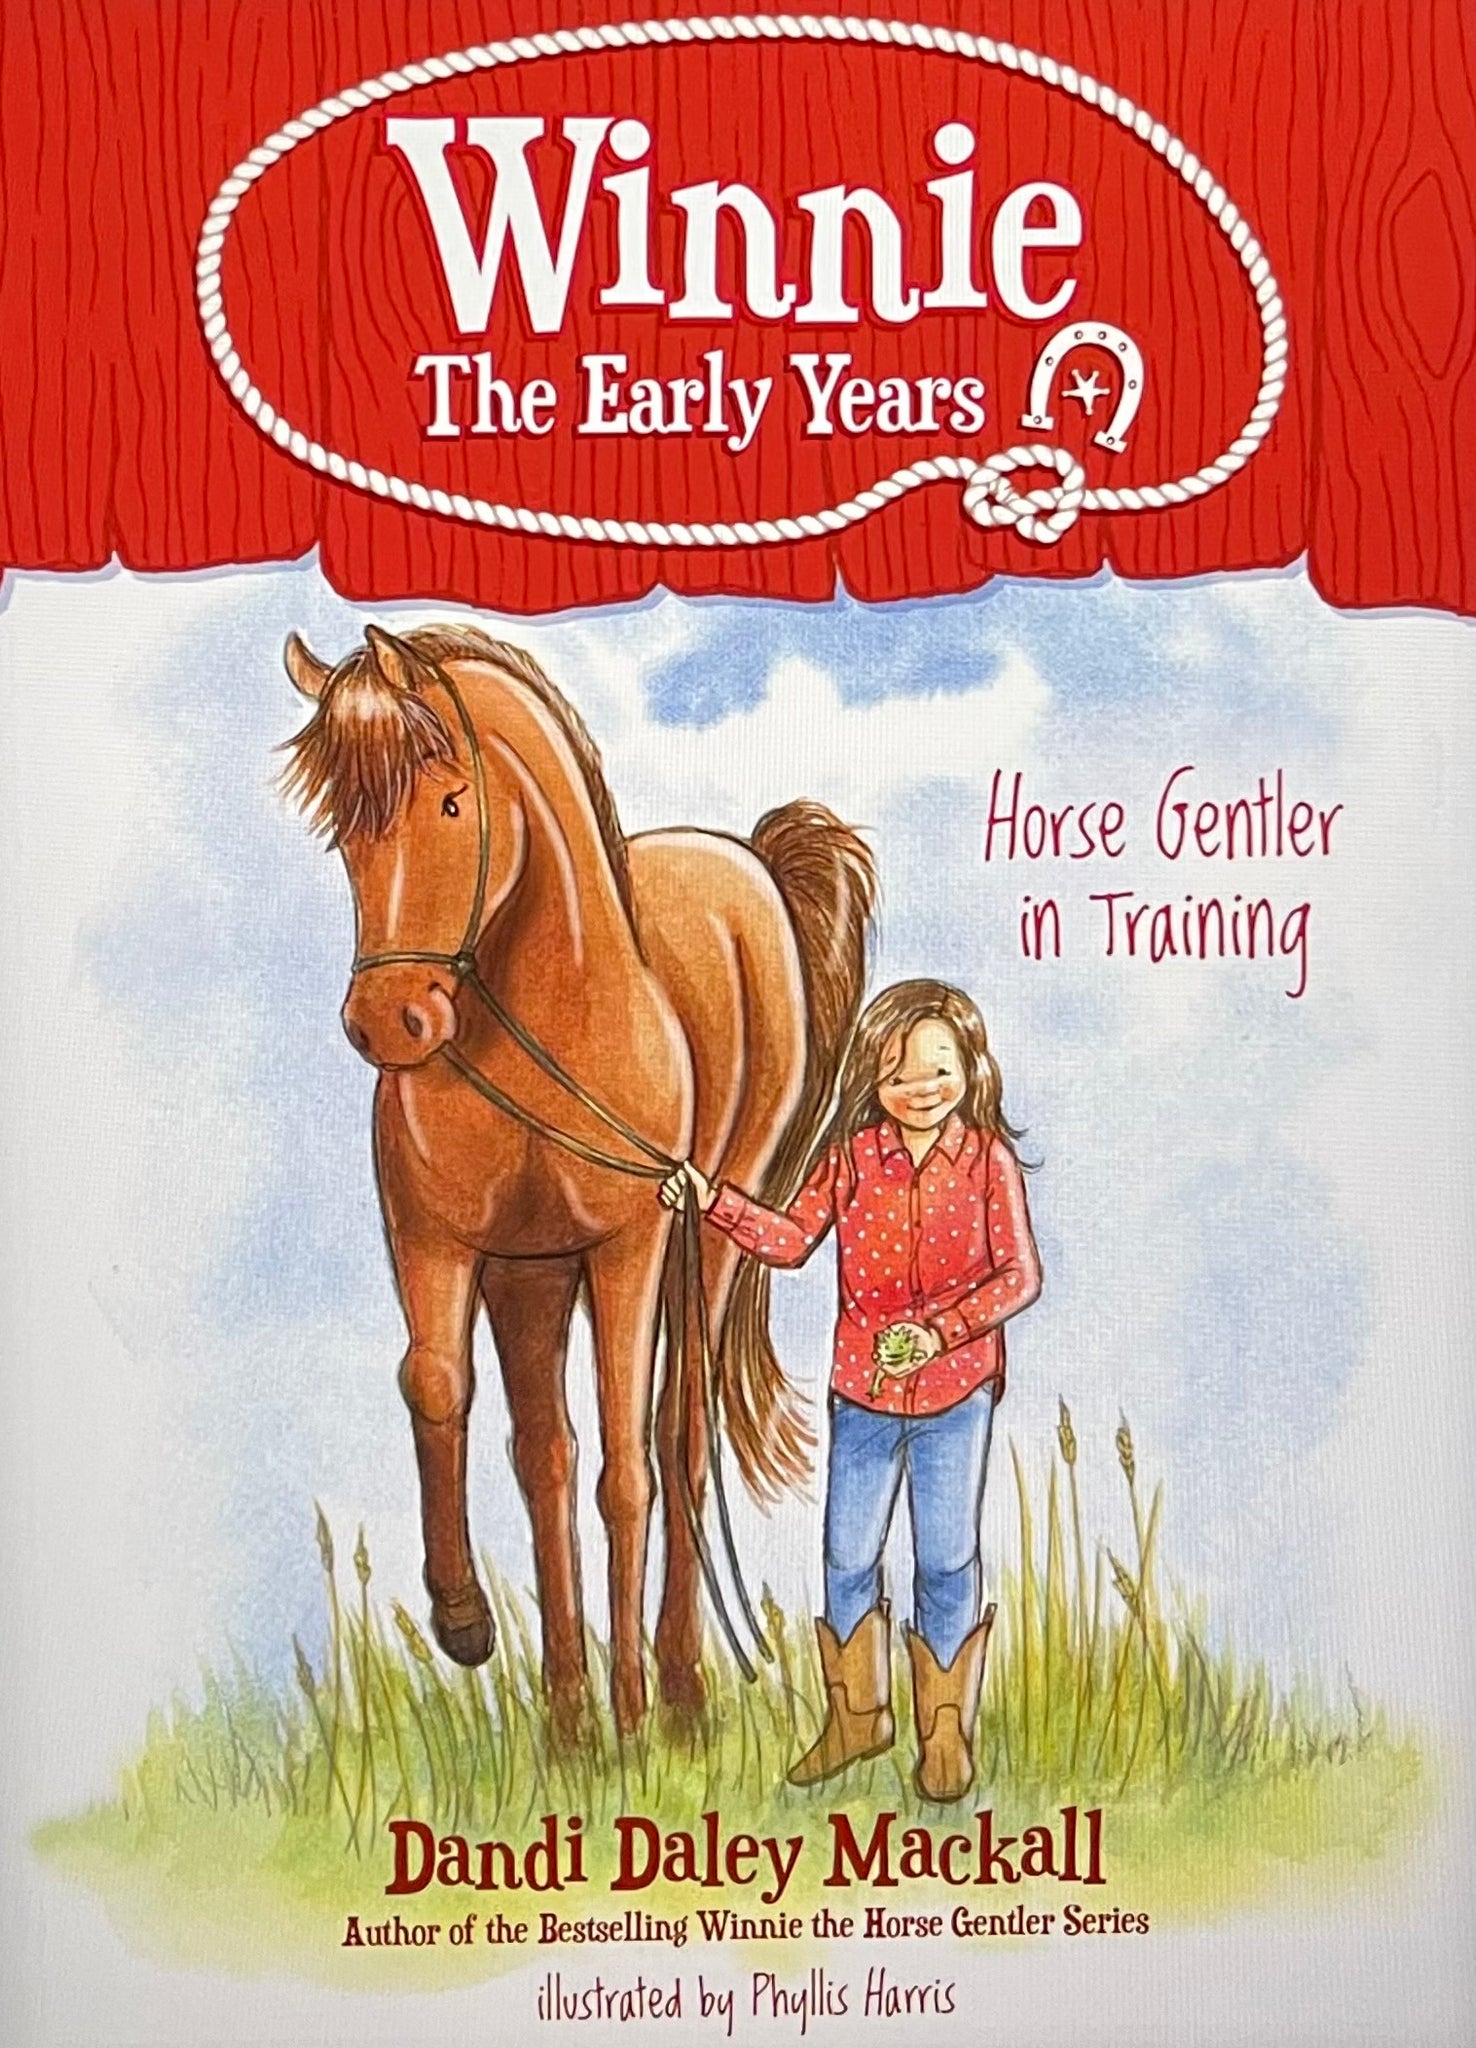 Horse Gentler in Training